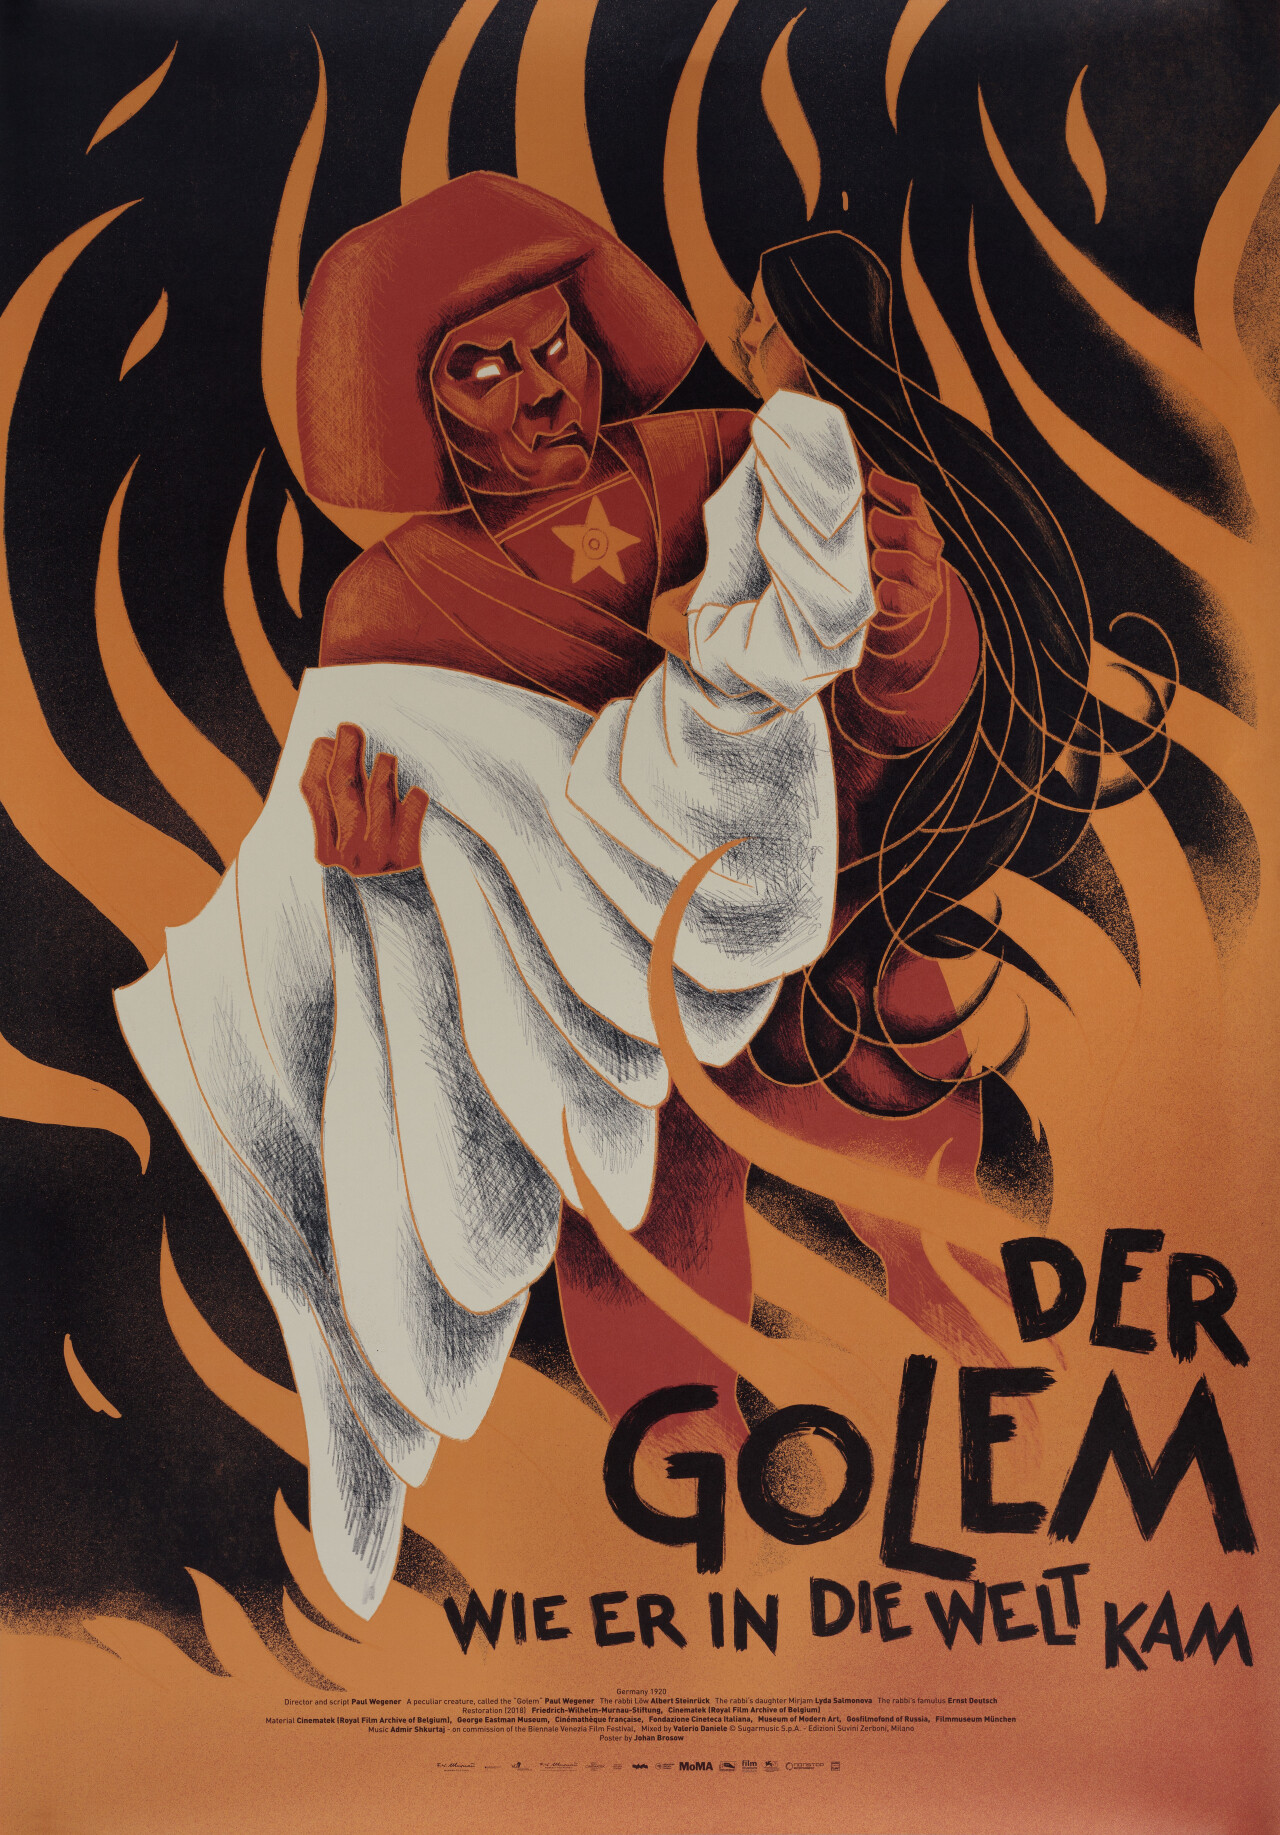 Голем, как он пришёл в мир (The Golem, 1920), режиссёр Пауль Вегенер, шведский постер к фильму, автор Йохан Брозов (ужасы, 2021 год)